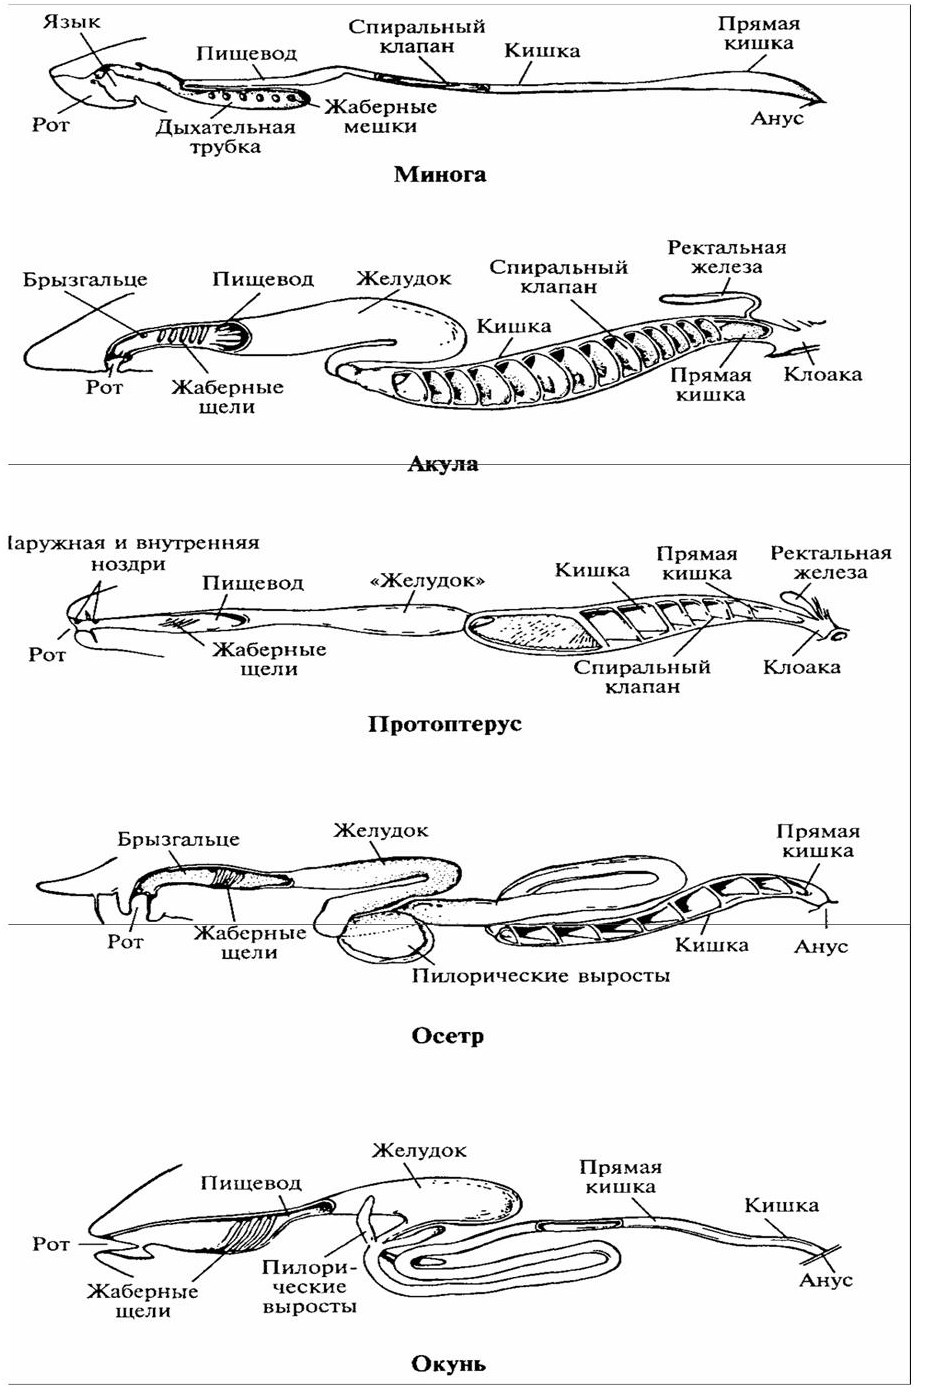 Филогенез позвоночных. Филогенез пищеварительной системы рыб. Эволюция пищеварительной системы схема. Эволюция пищеварительной системы позвоночных животных. Схема строения пищеварительной системы позвоночных.